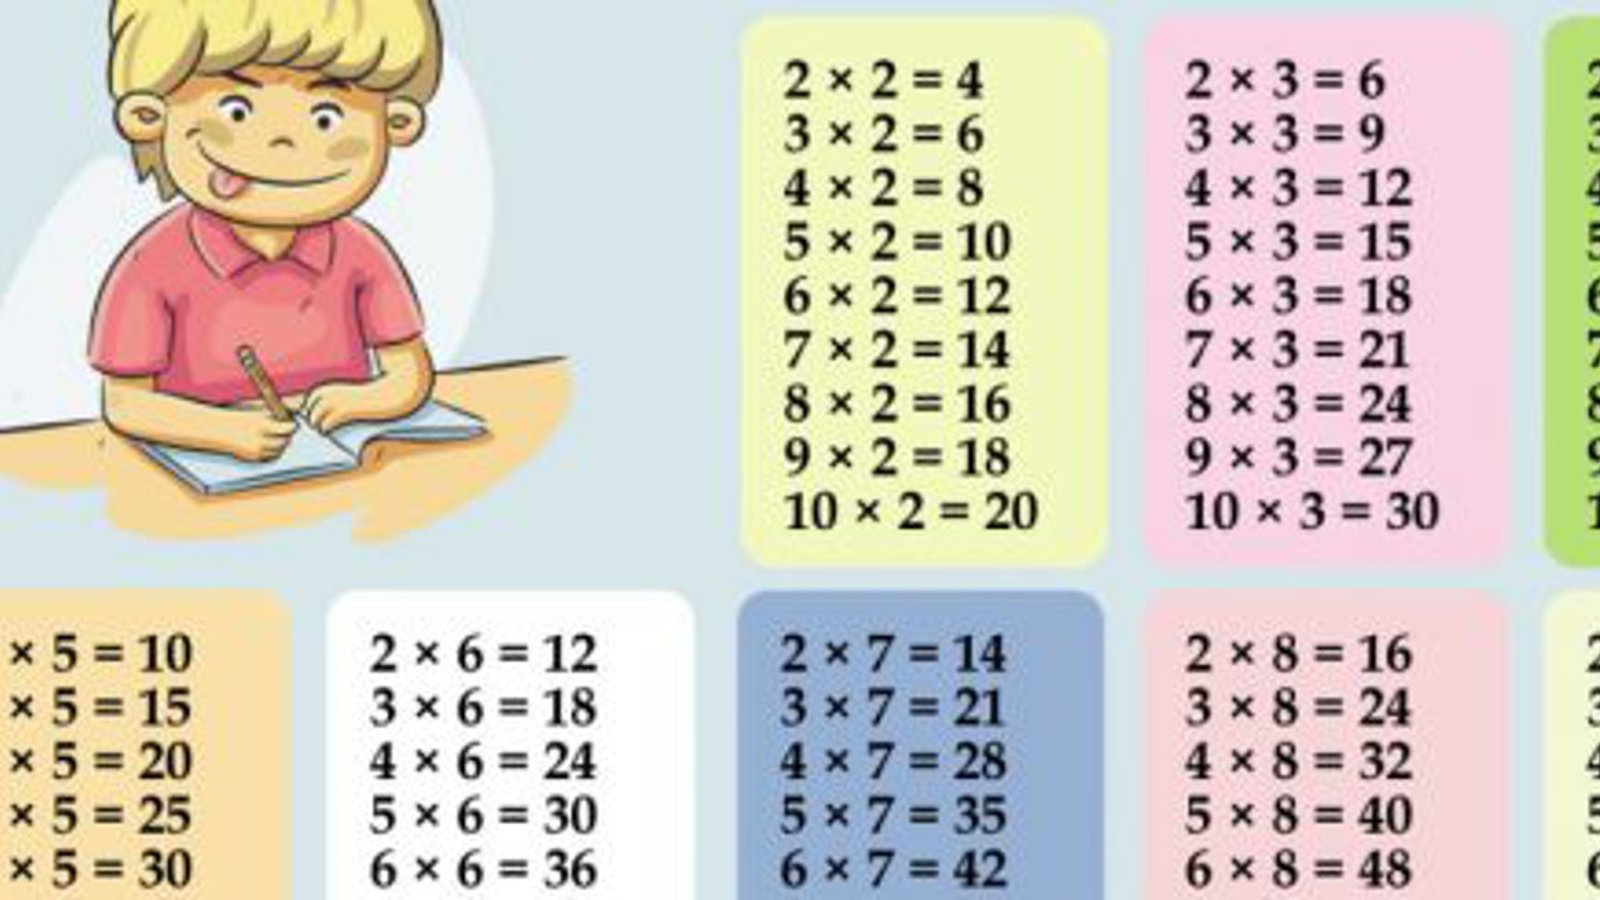 Un truc génial pour apprendre les tables de multiplication facilement aux enfants! 